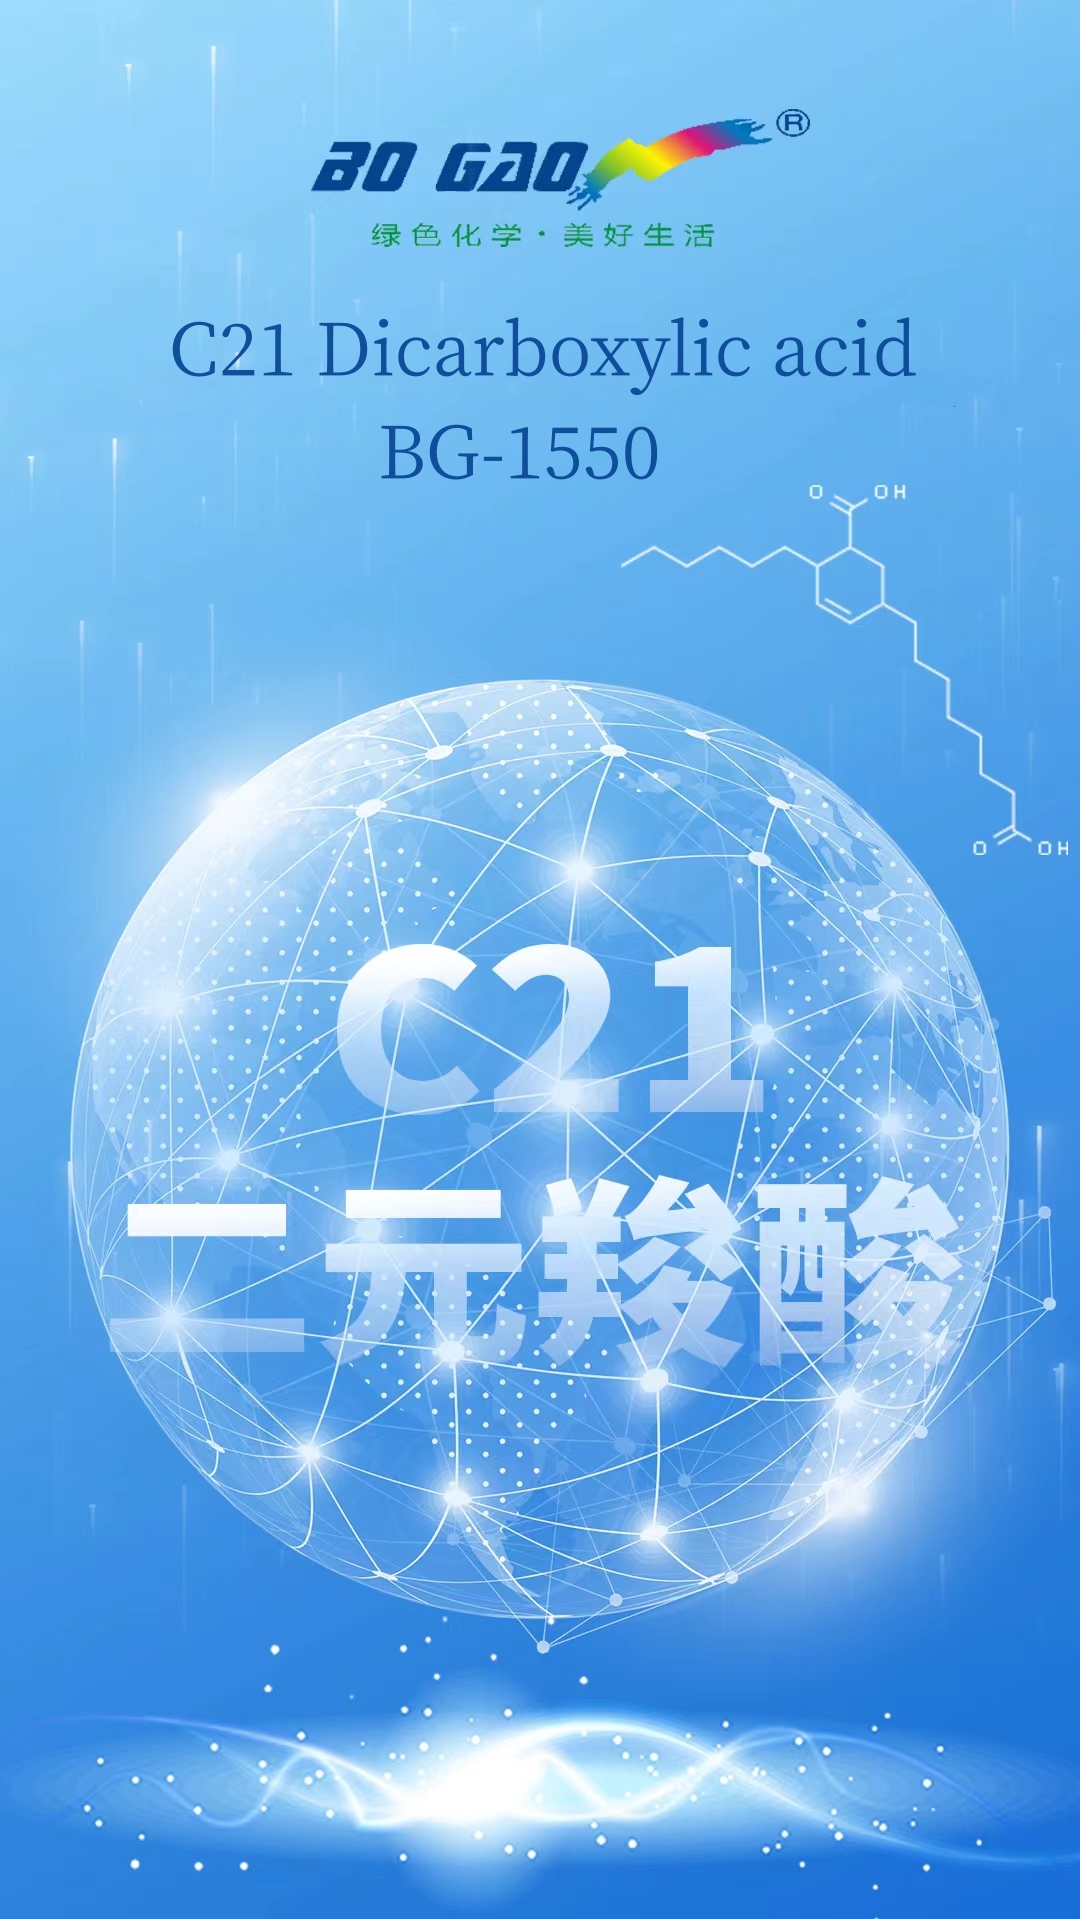 BoGao Yazindua Matumizi Mengi-C21 Dicarboxylic acid/BG-1550